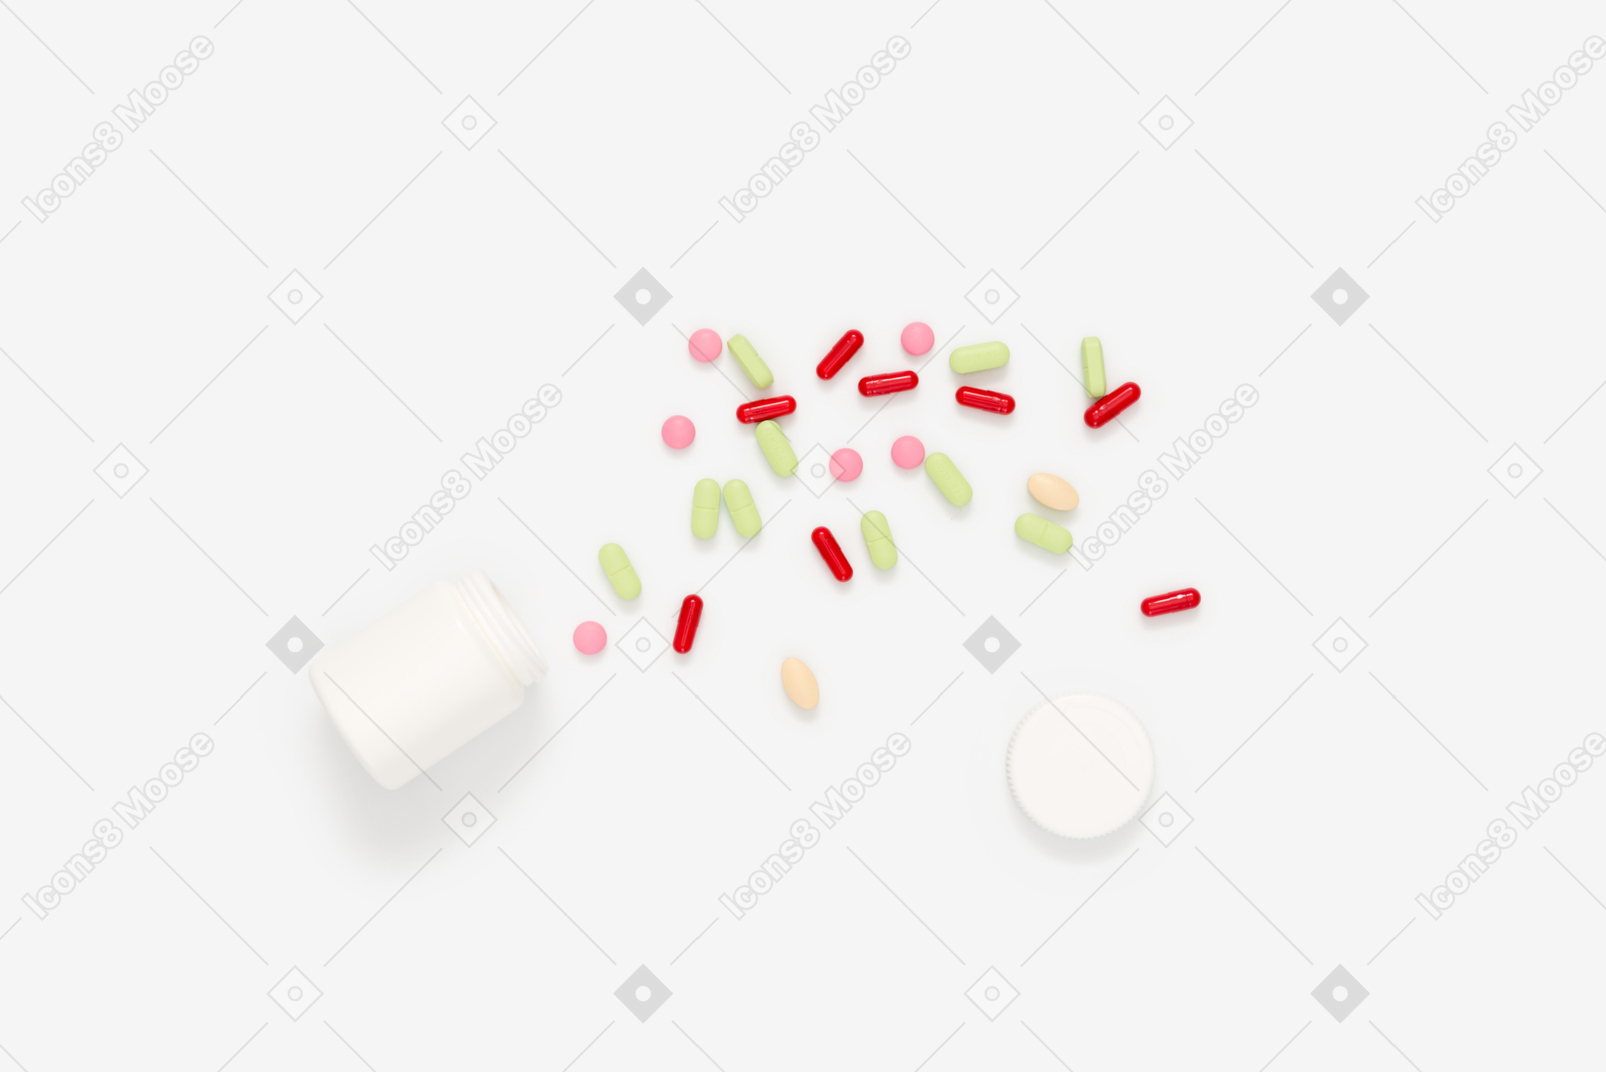 Pill bottle lying on its side